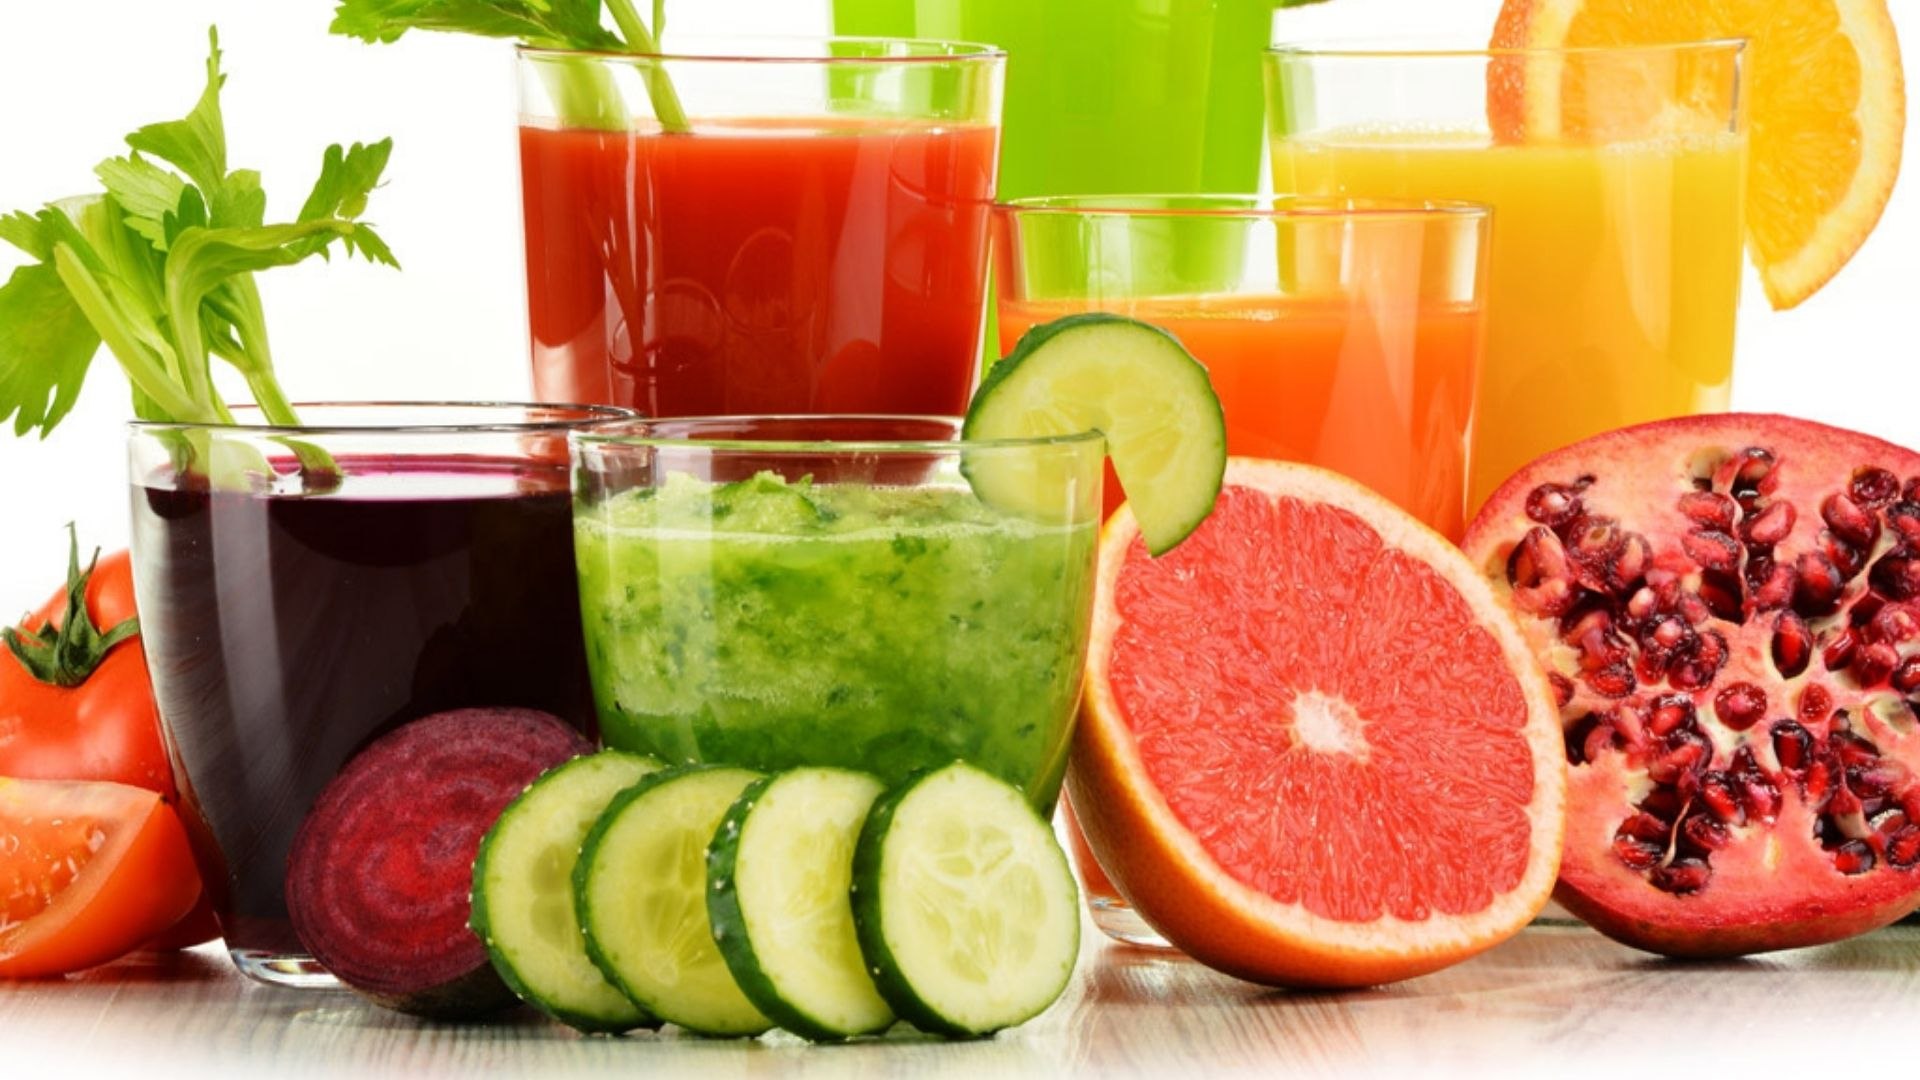 Health Care Tips: अपनी डाइट में जरूर शामिल करें इन सब्जियों और फलों का जूस हेल्दी रहने में मिलेगी मदद !